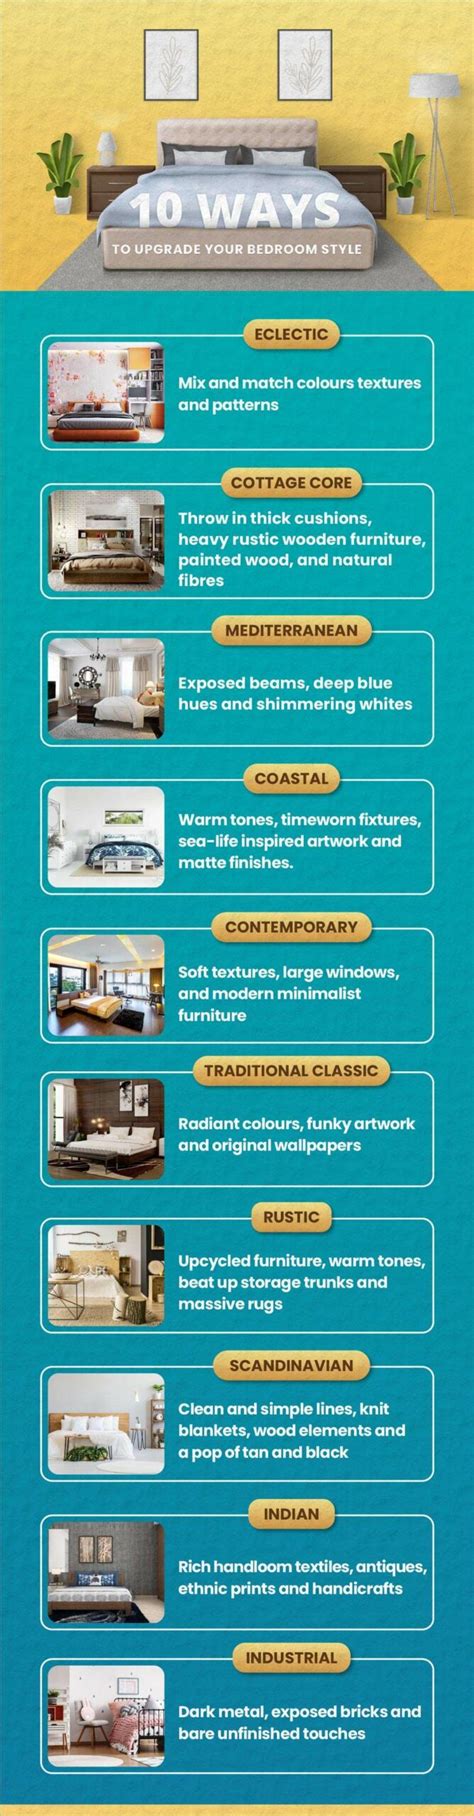 Types Of Interior Design